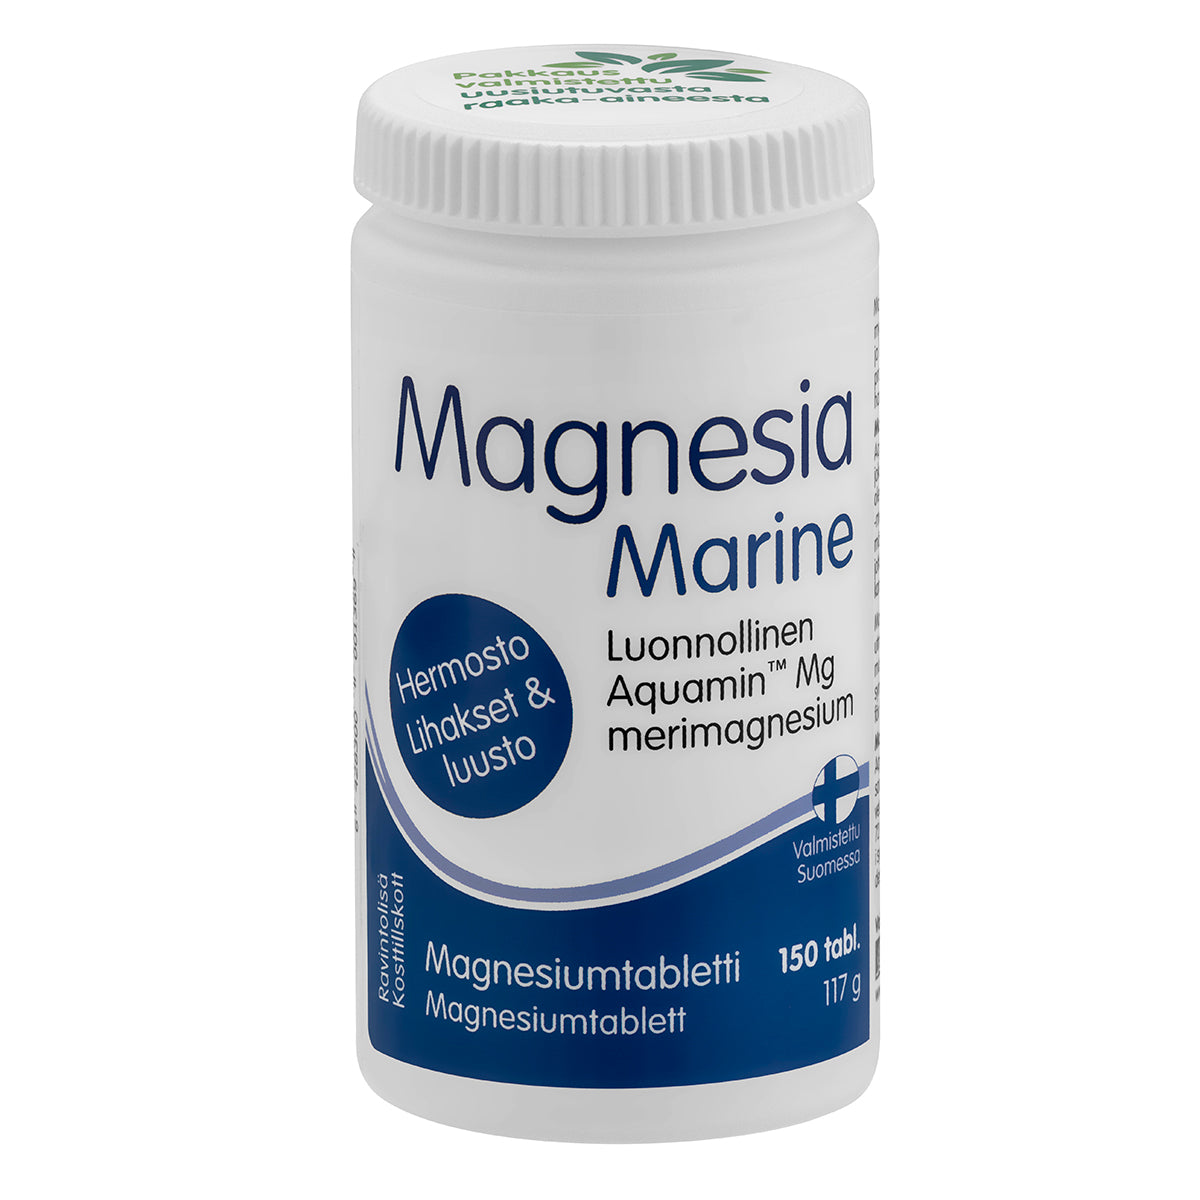 Magnesia Marine - Magnesiumtabletti 150 tabl.